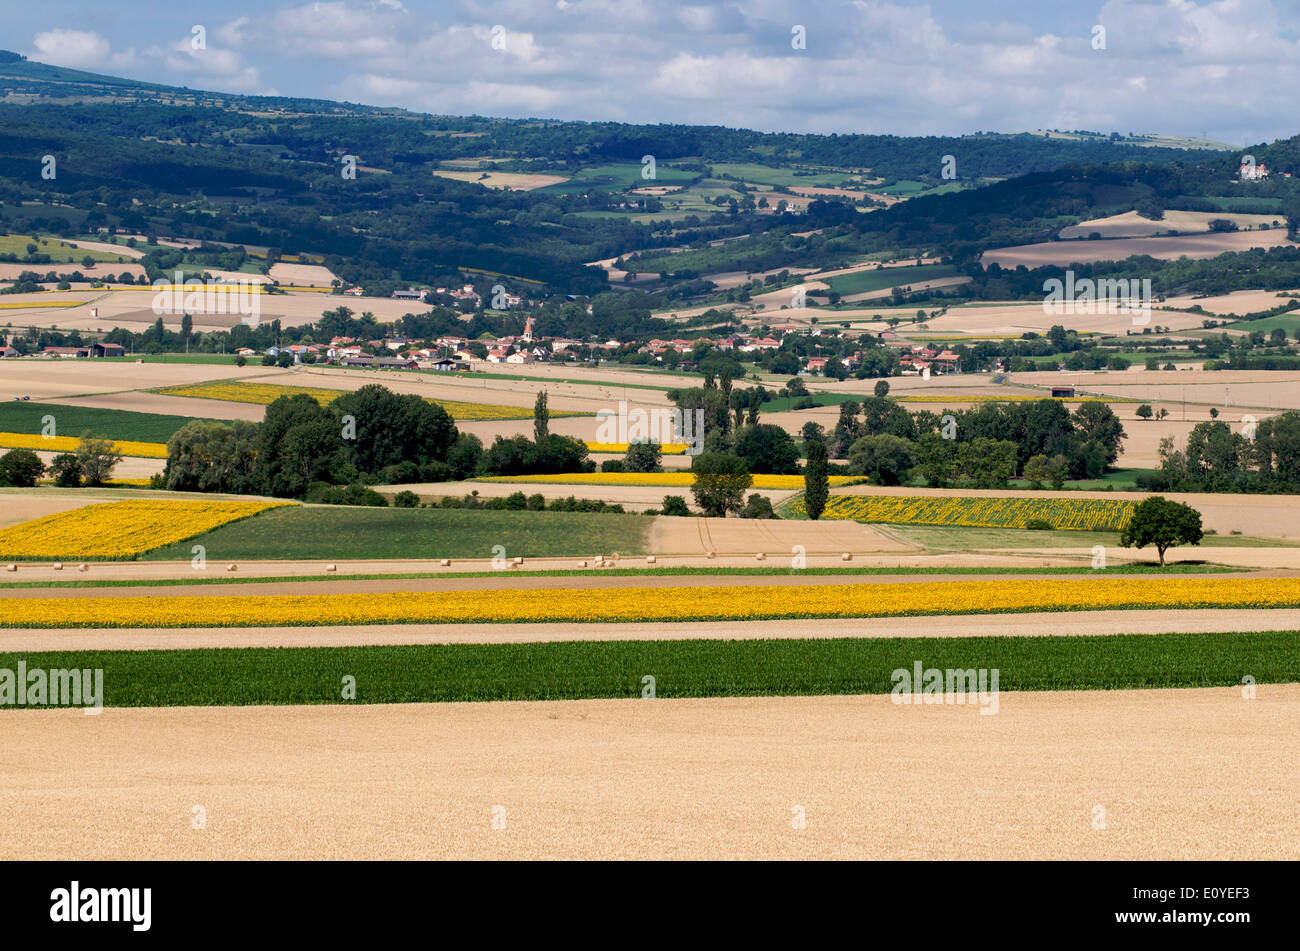 Village of Antoingt, Lembron, Puy de Dome, Auvergne, France Stock Photo